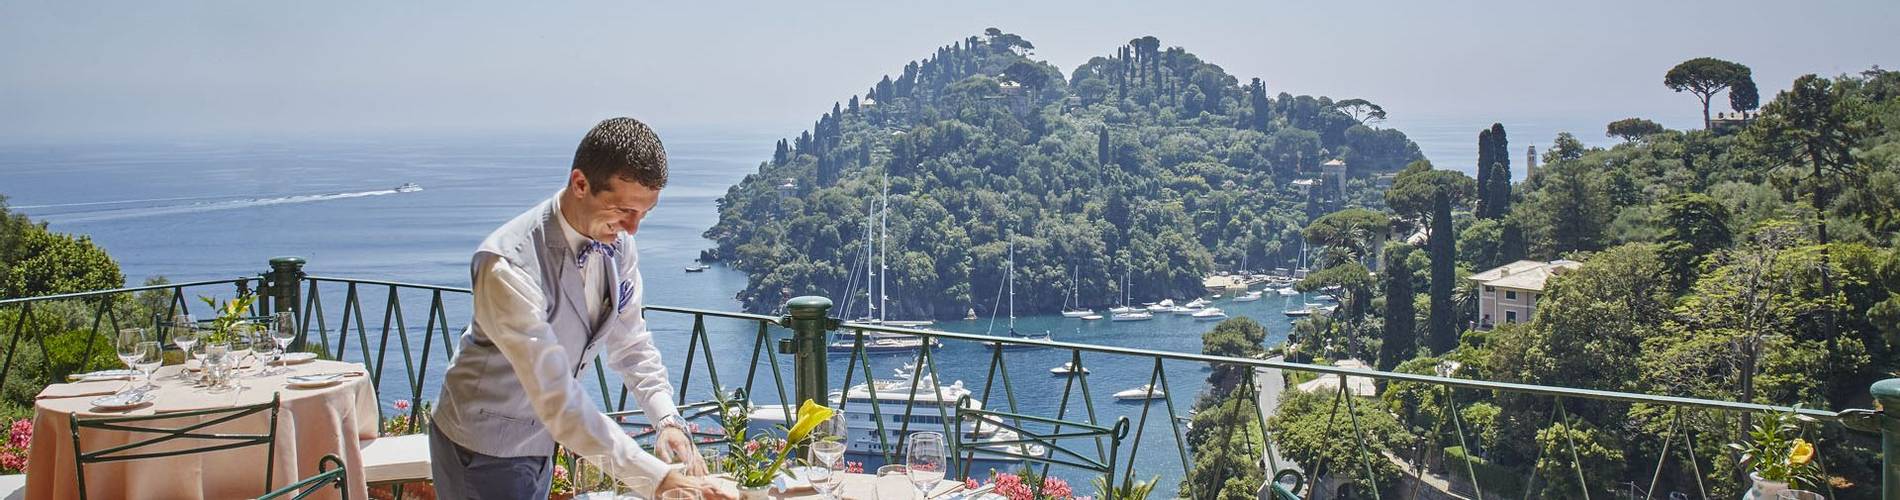 Belmond Hotel Splendido, Portofino